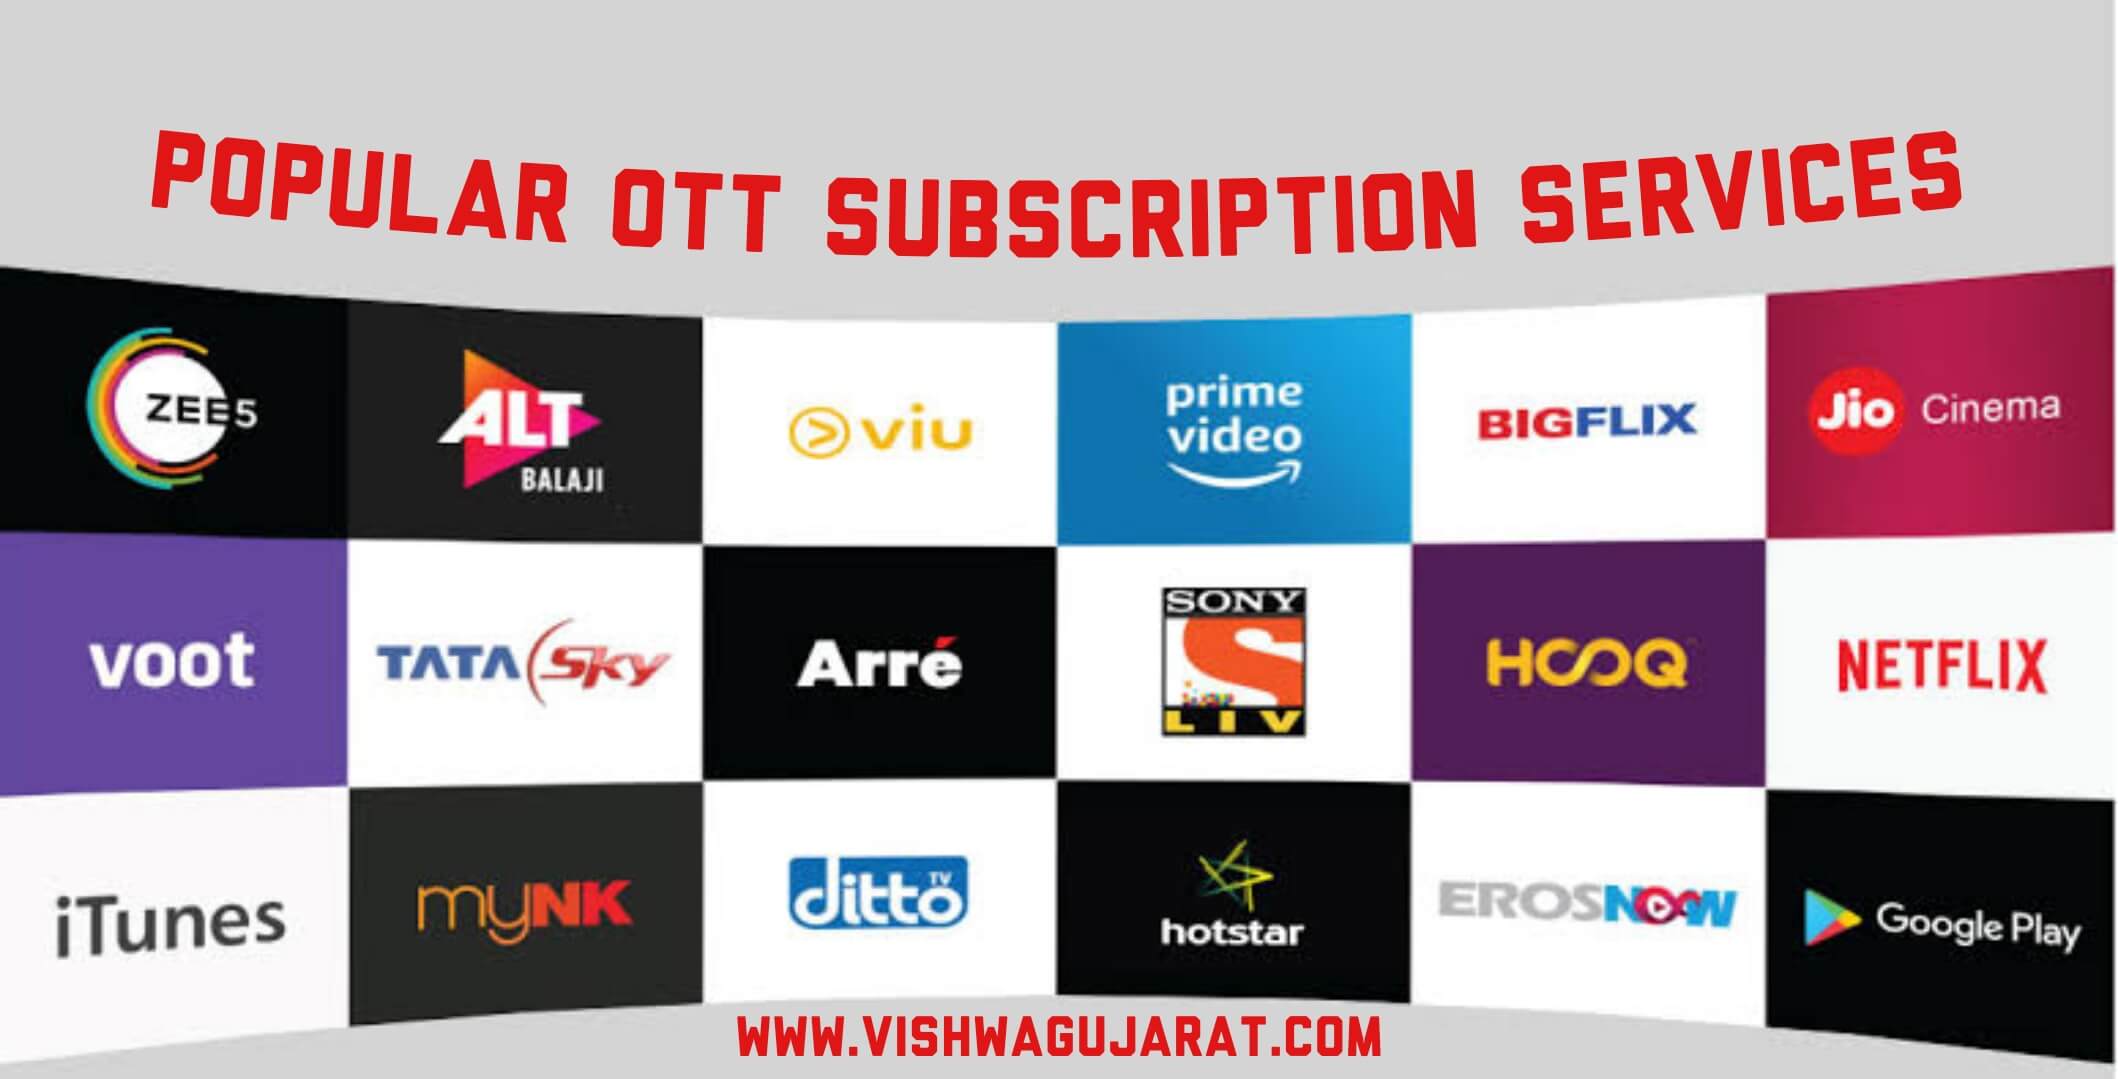 Popular OTT subscription services